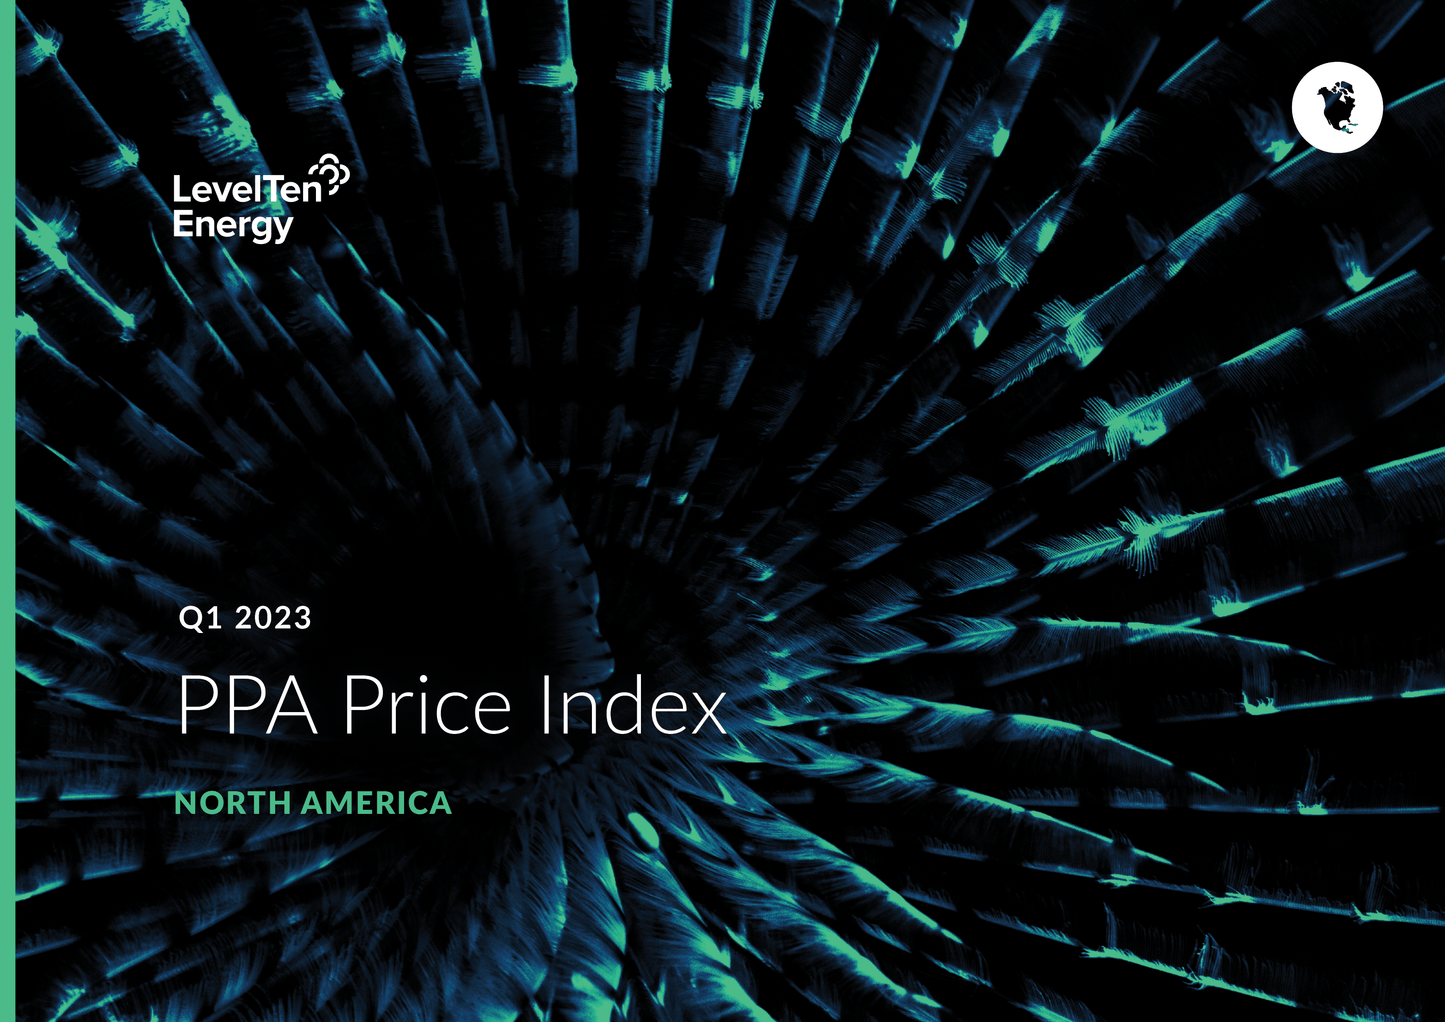 Q1 2023 PPA Price Index - North America